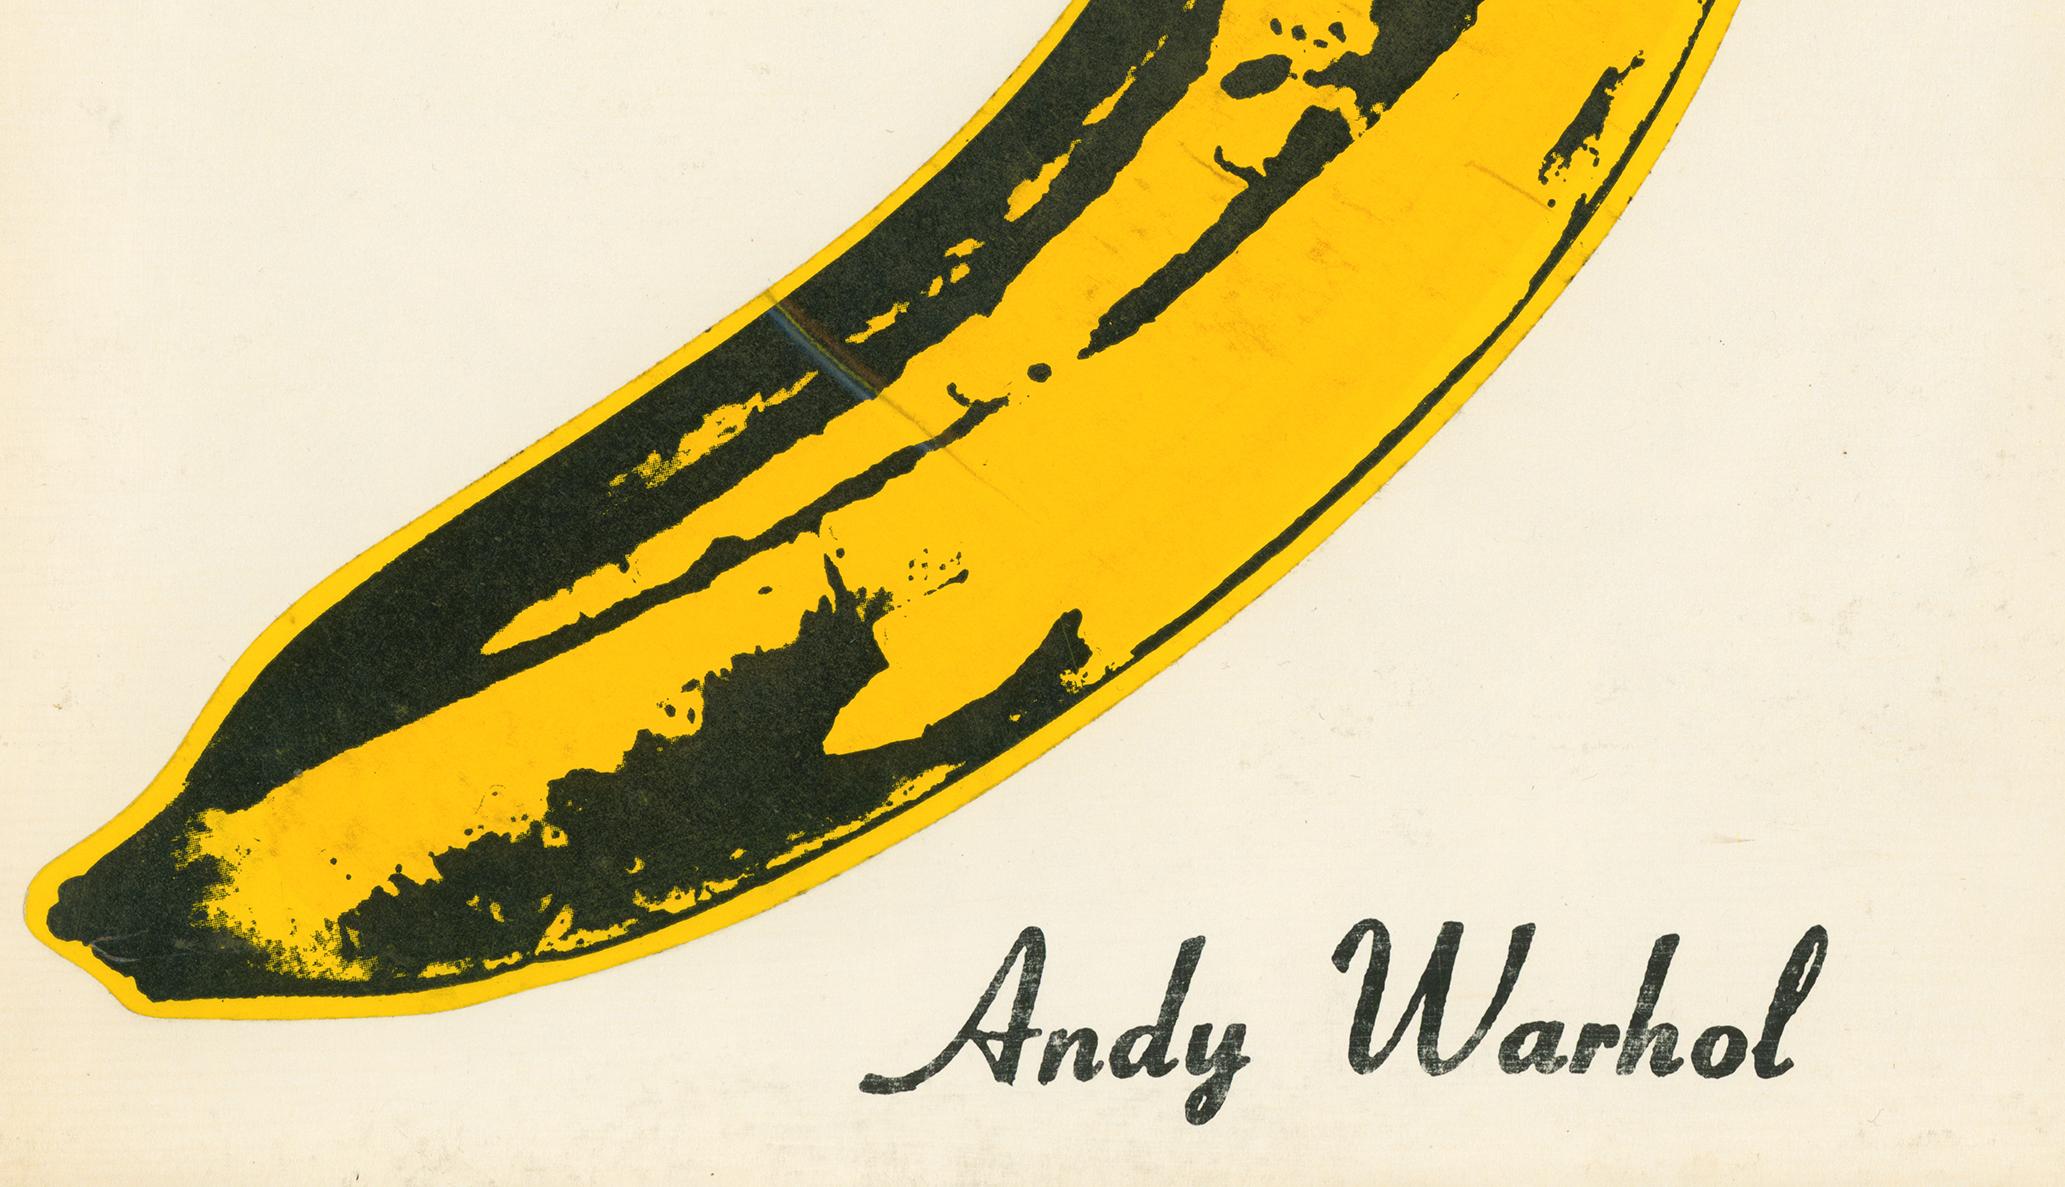 andy warhol banana vinyl